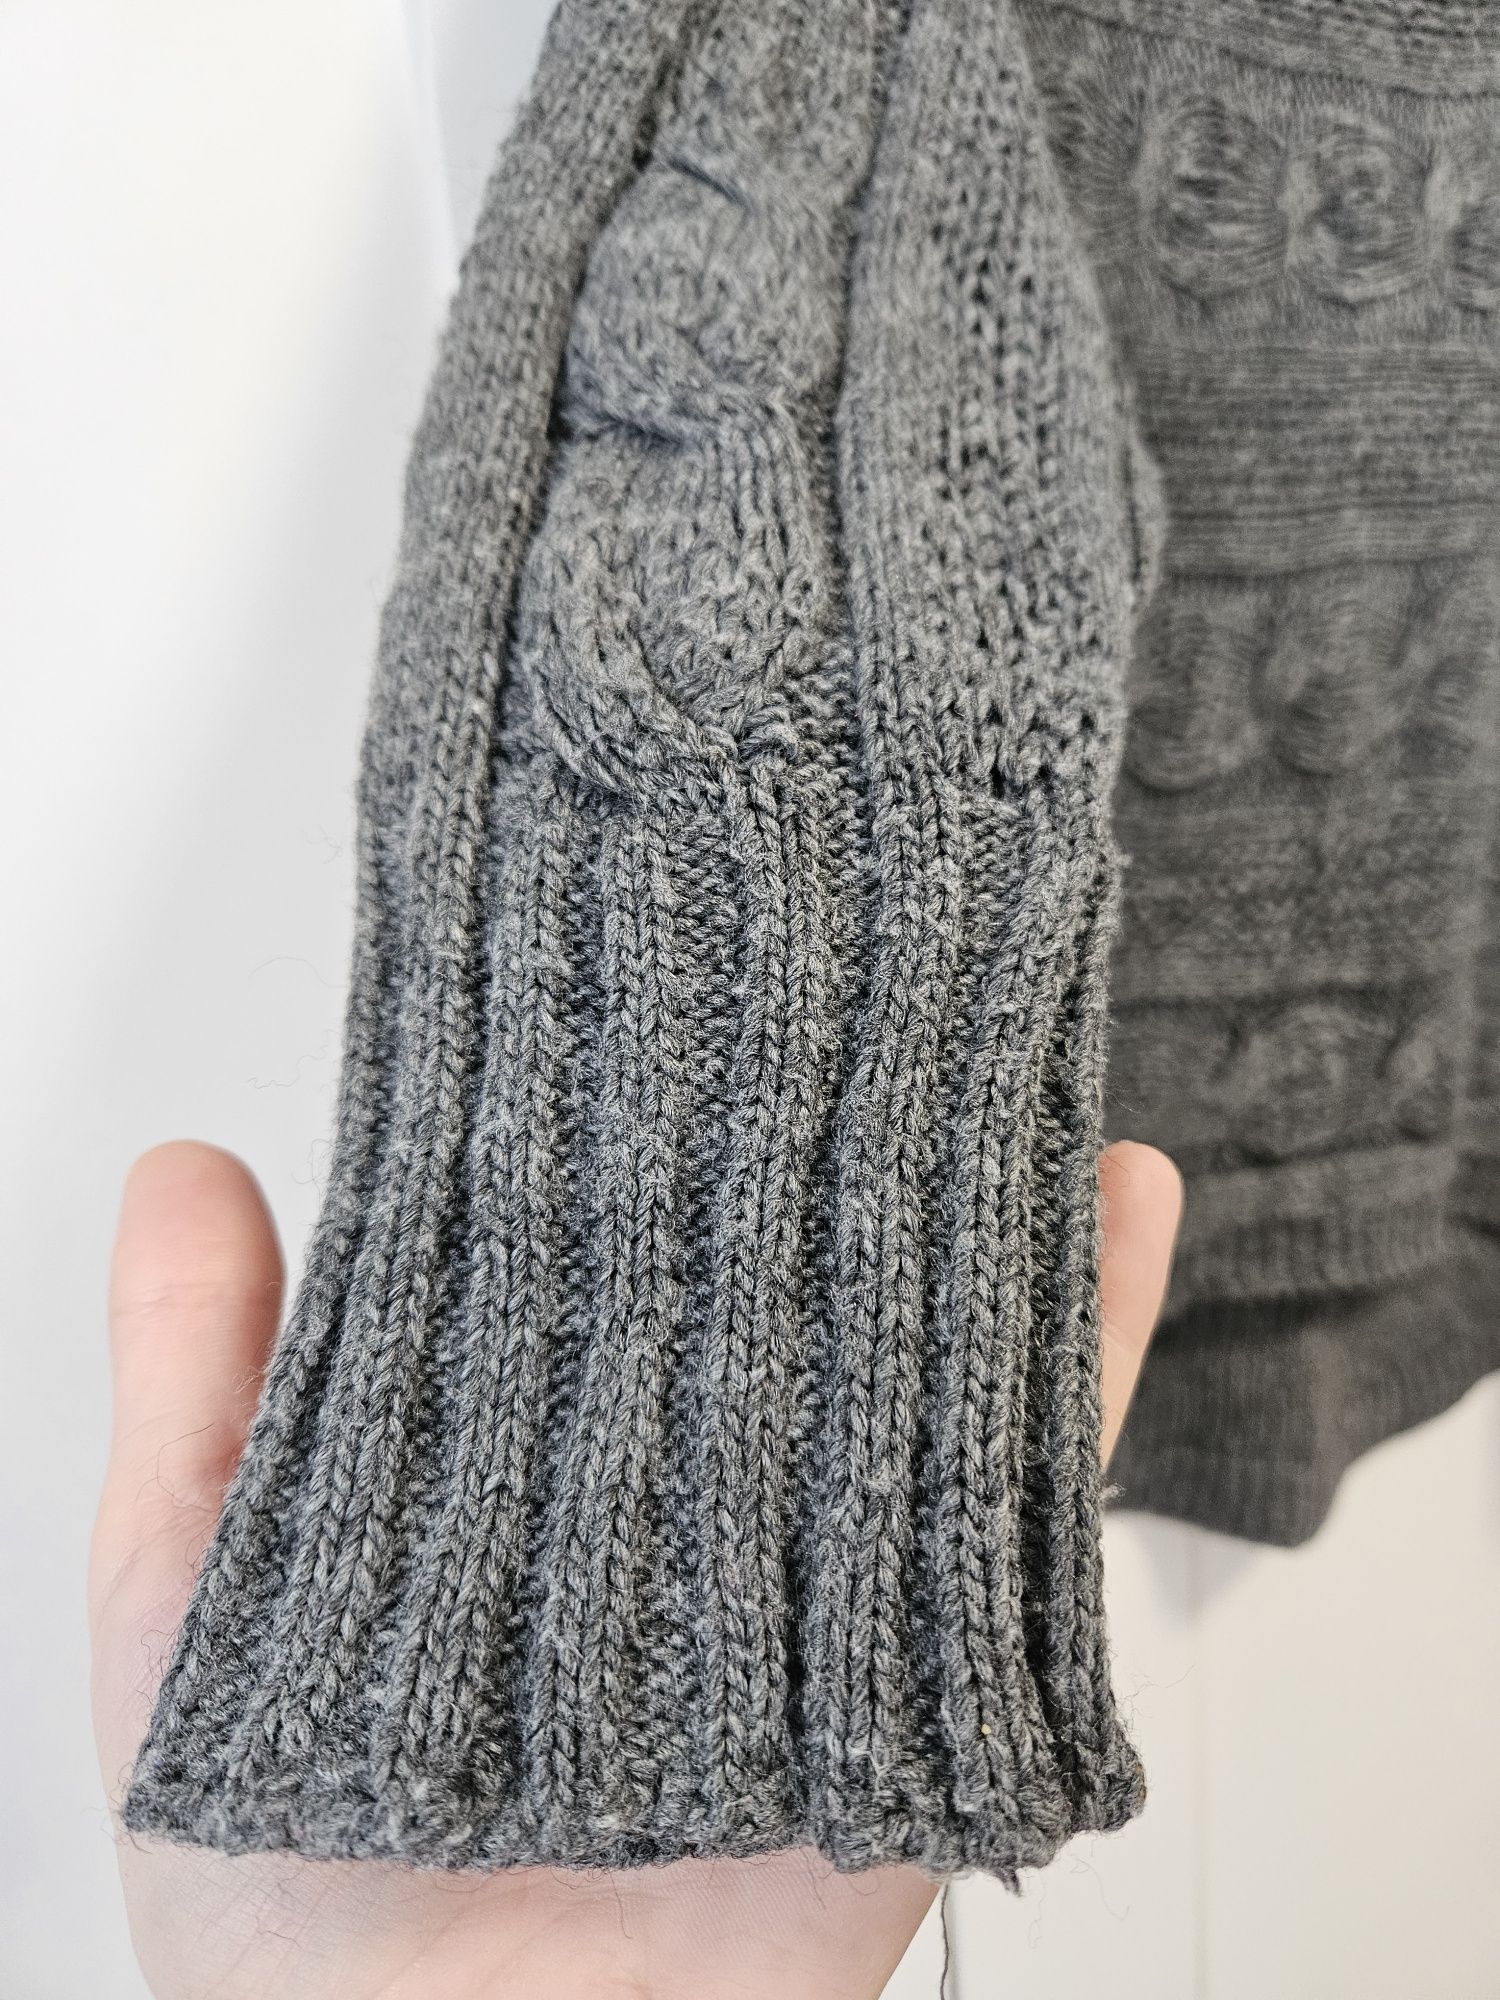 Pulover tricotat
Marime universala (eu l-am purtat pentru S)
22 lei